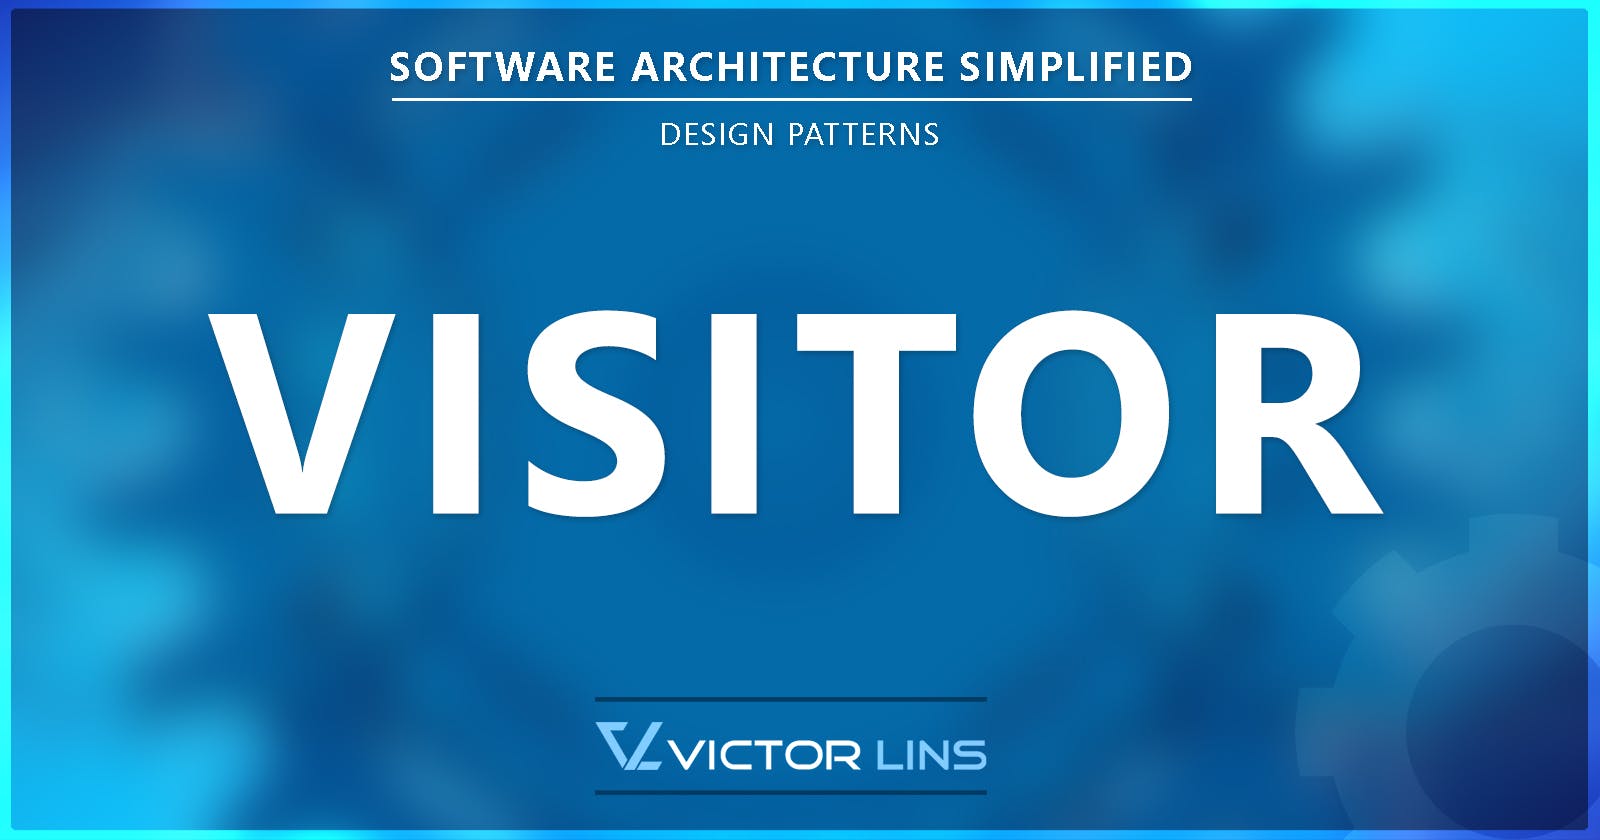 Visitor - Design Pattern